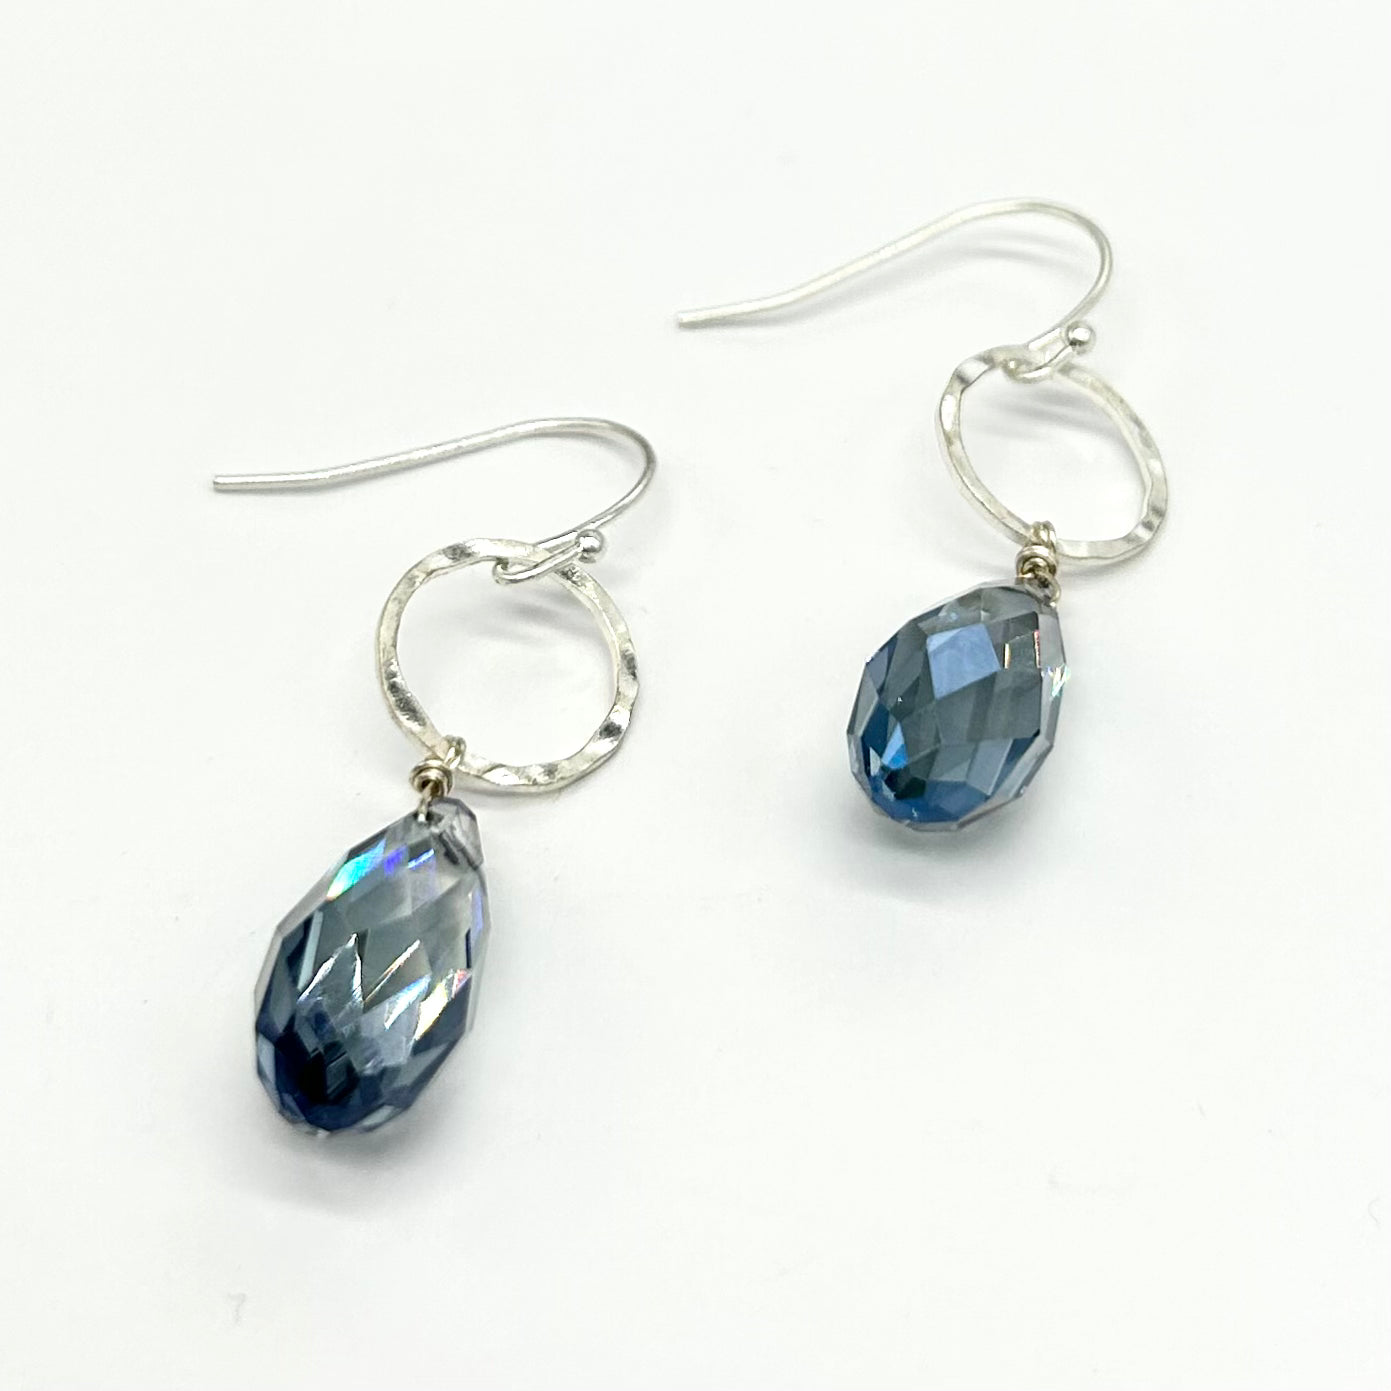 Teardrop Crystal With Ring Drop Earrings